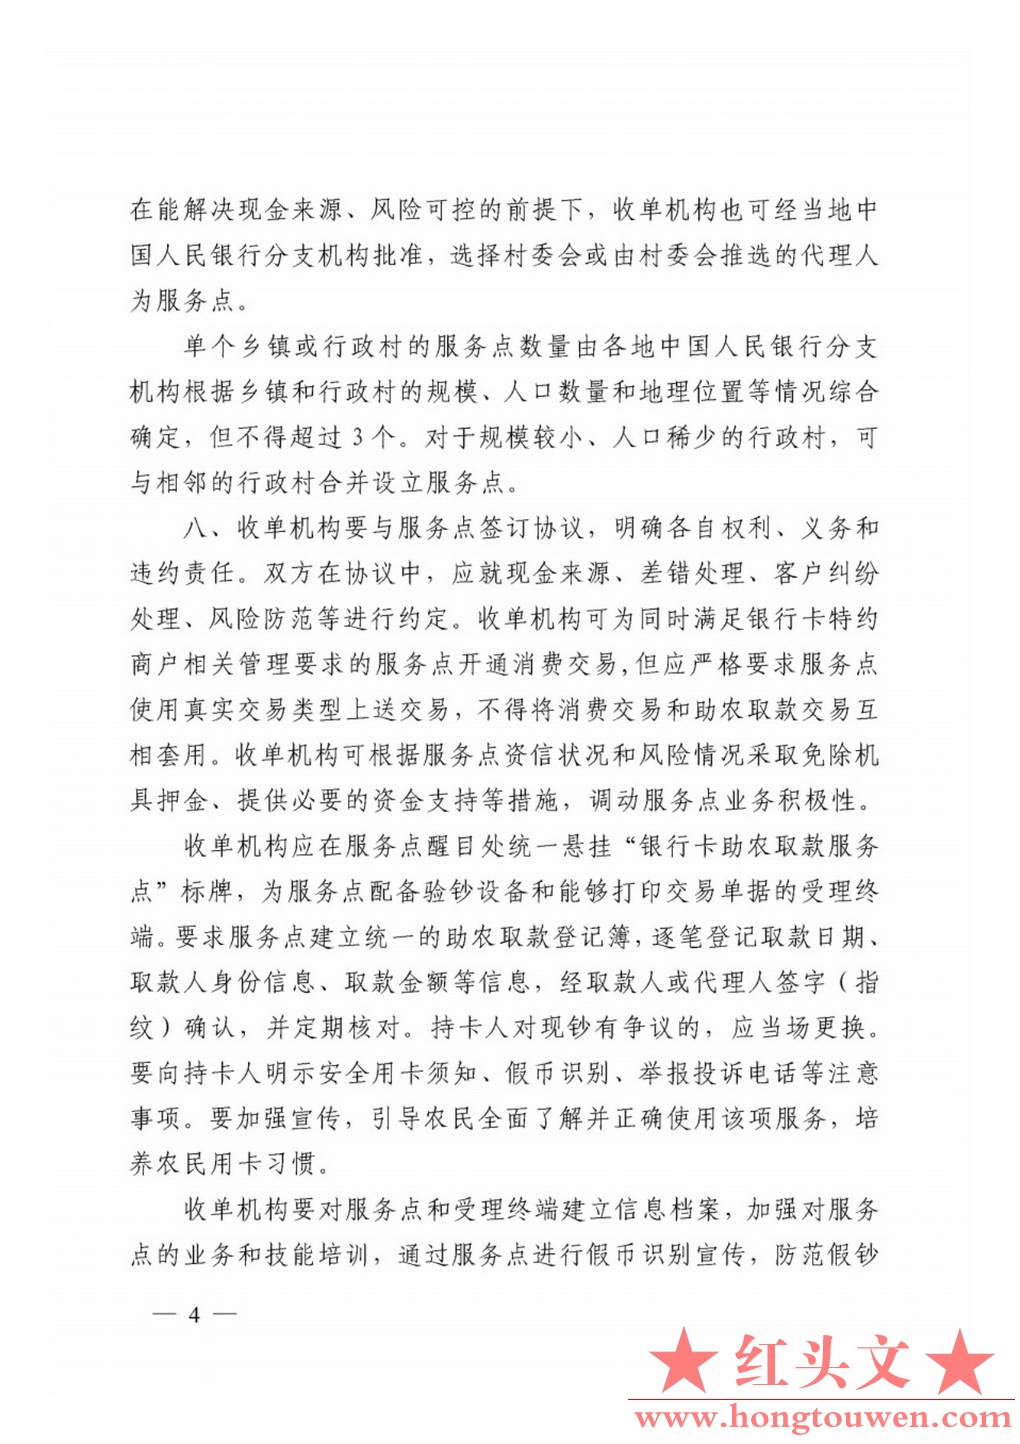 银发[2011]177号-中国人民银行关于推广银行卡助农取款服务的通知_Page4.jpg.jpg